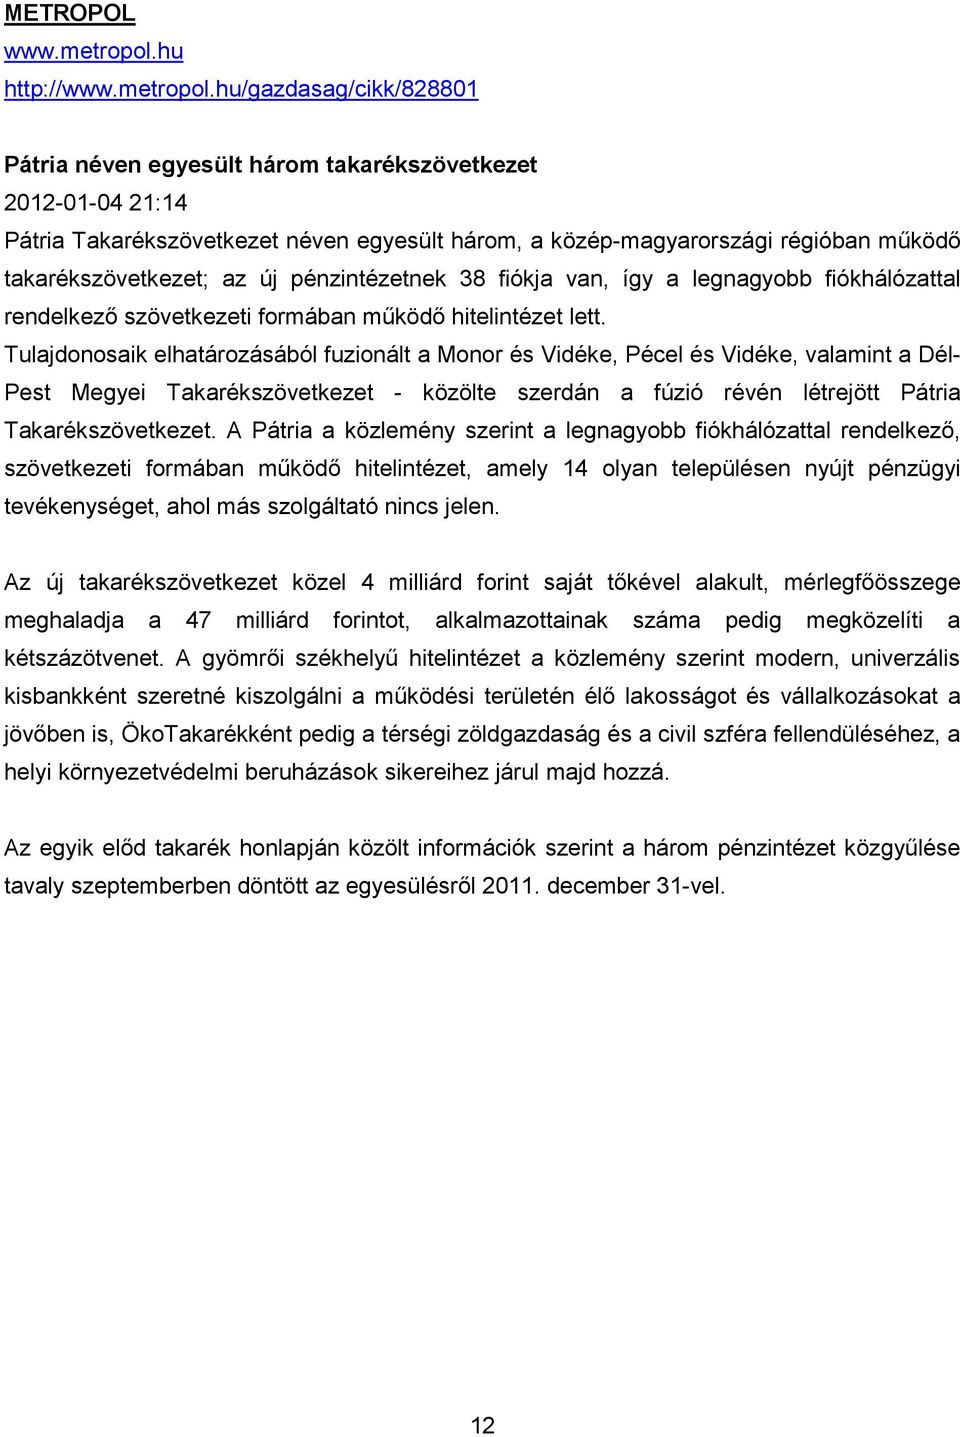 hu/gazdasag/cikk/828801 Pátria néven egyesült három takarékszövetkezet 2012-01-04 21:14 Pátria Takarékszövetkezet néven egyesült három, a közép-magyarországi régióban mőködı